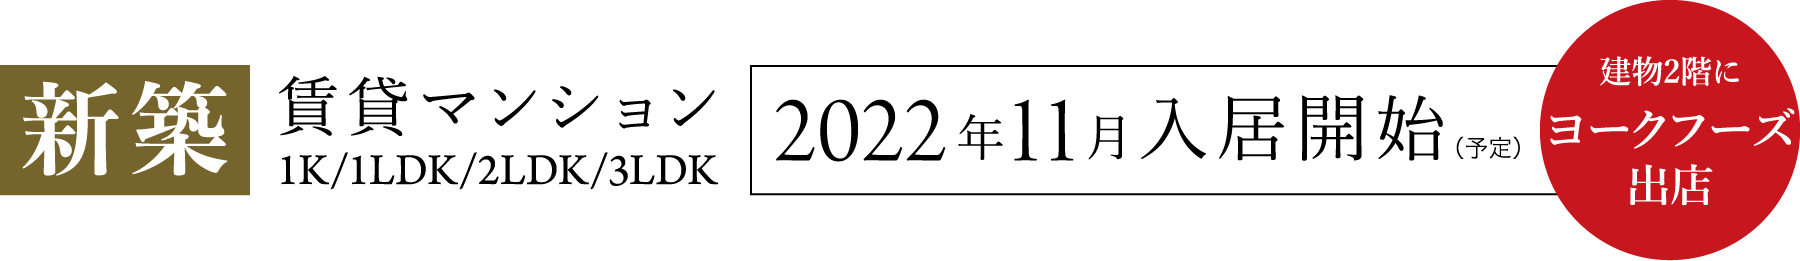 新築 賃貸マンション 1K/1LDK/2LDK/3LDK 2022年11月入居開始（予定）